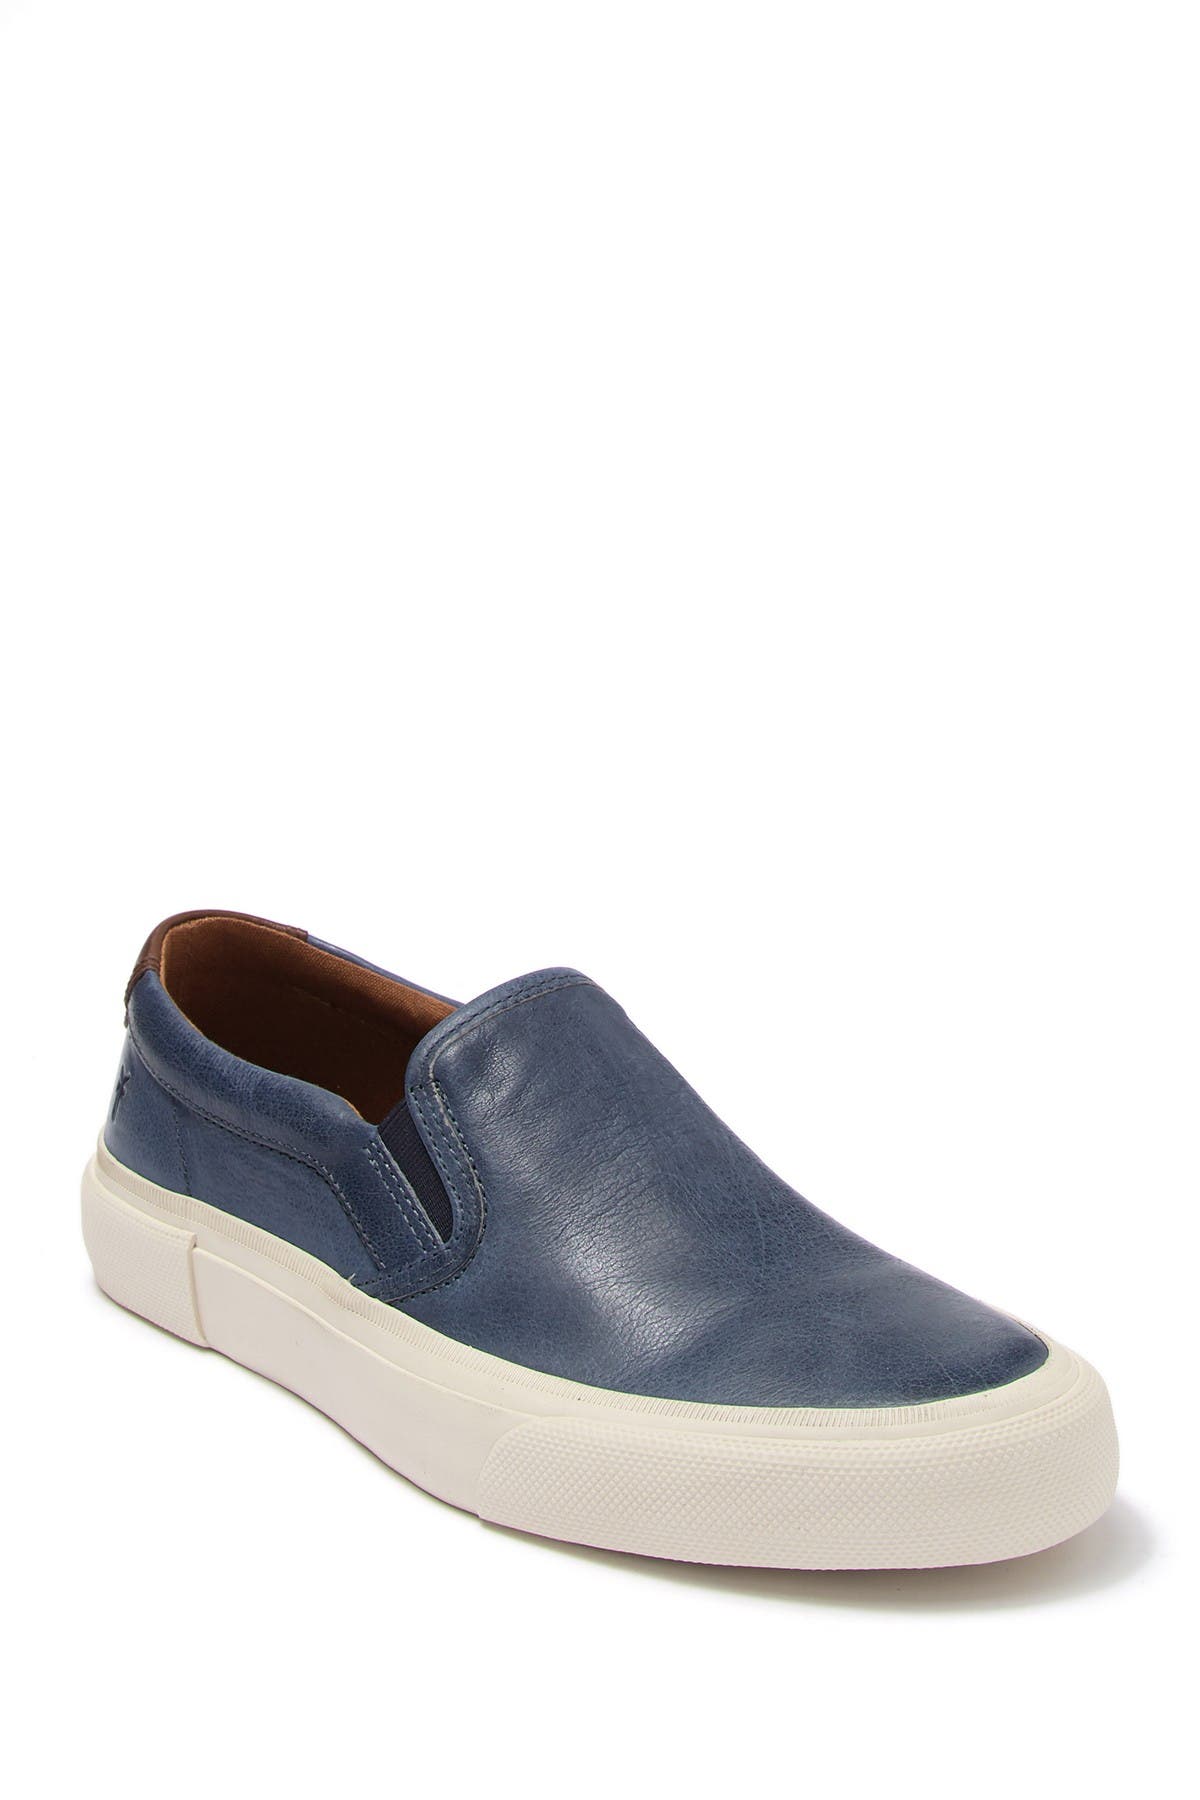 Frye | Ludlow Leather Slip-On Sneaker 